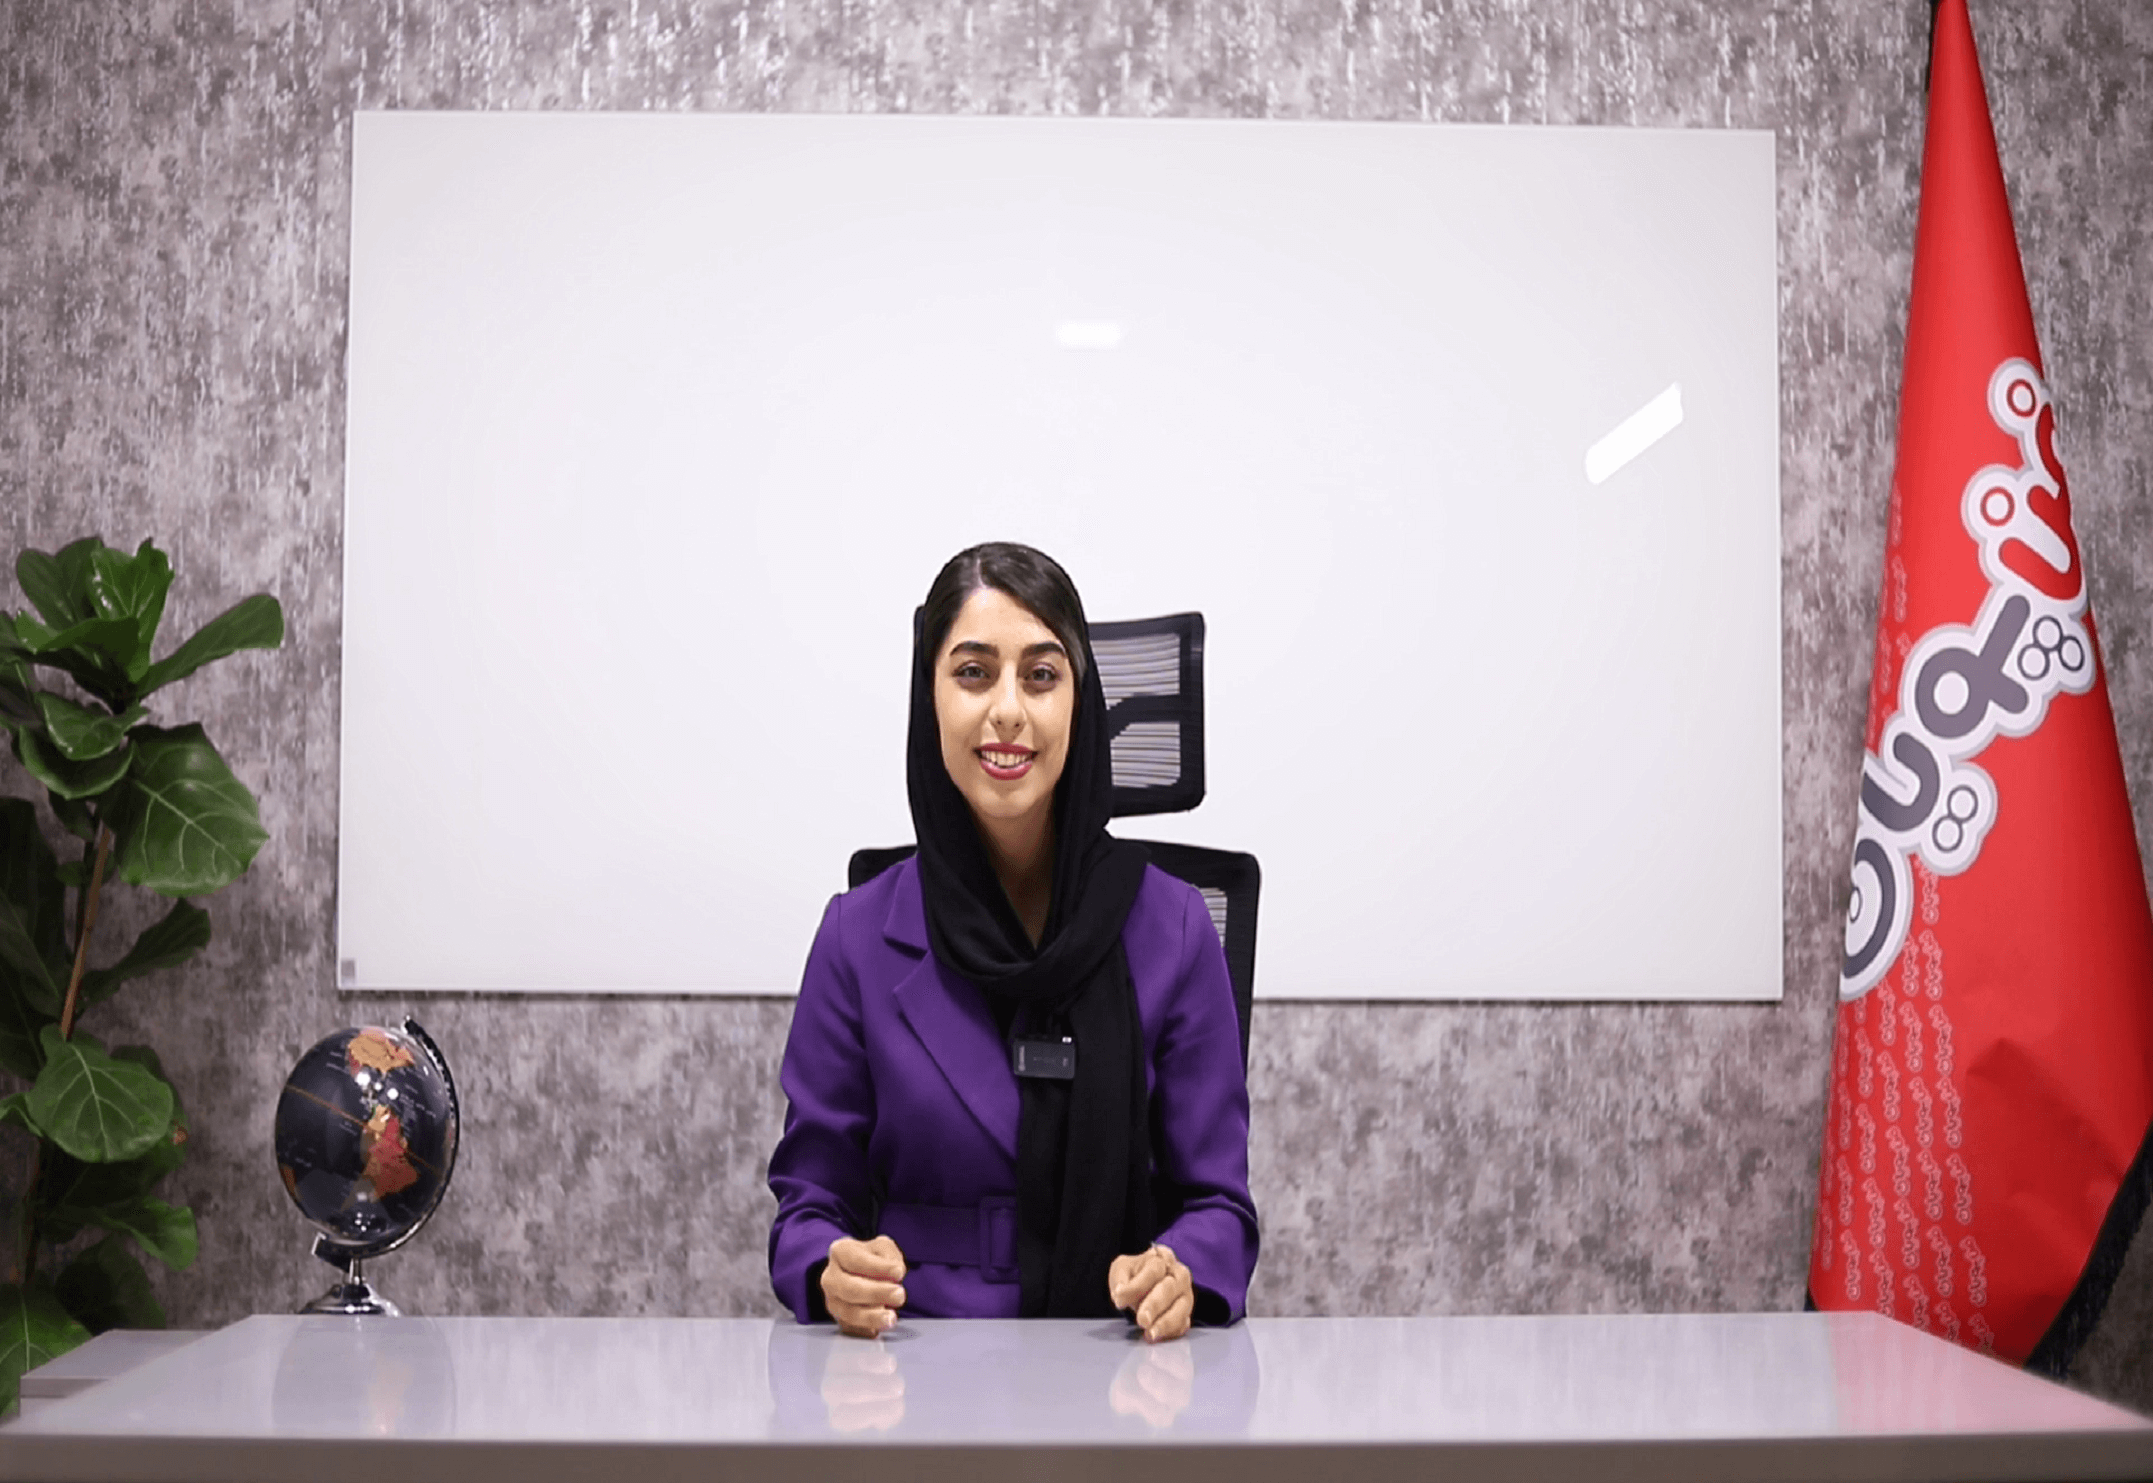 آموزش تعمیر لوازم خانگی در آموزشگاه فن پویان اصفهان